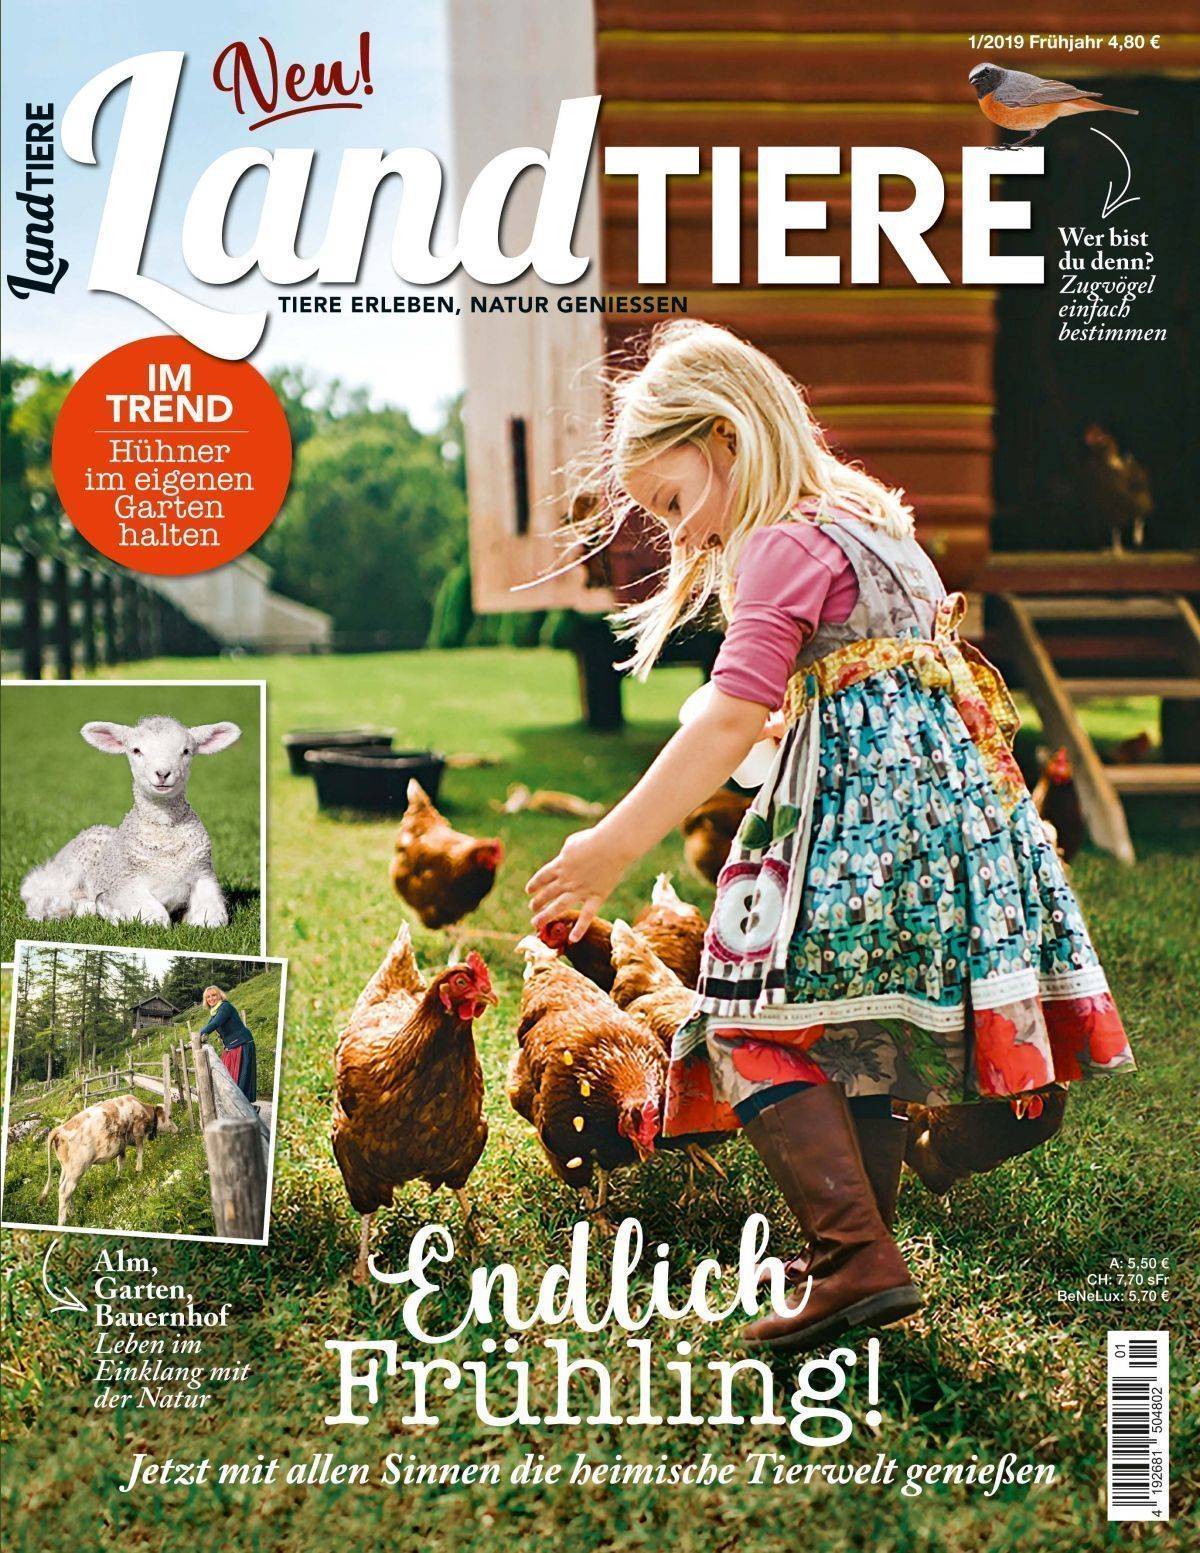 Das Cover des neuen Nutzwert-Magazins "Landtiere"